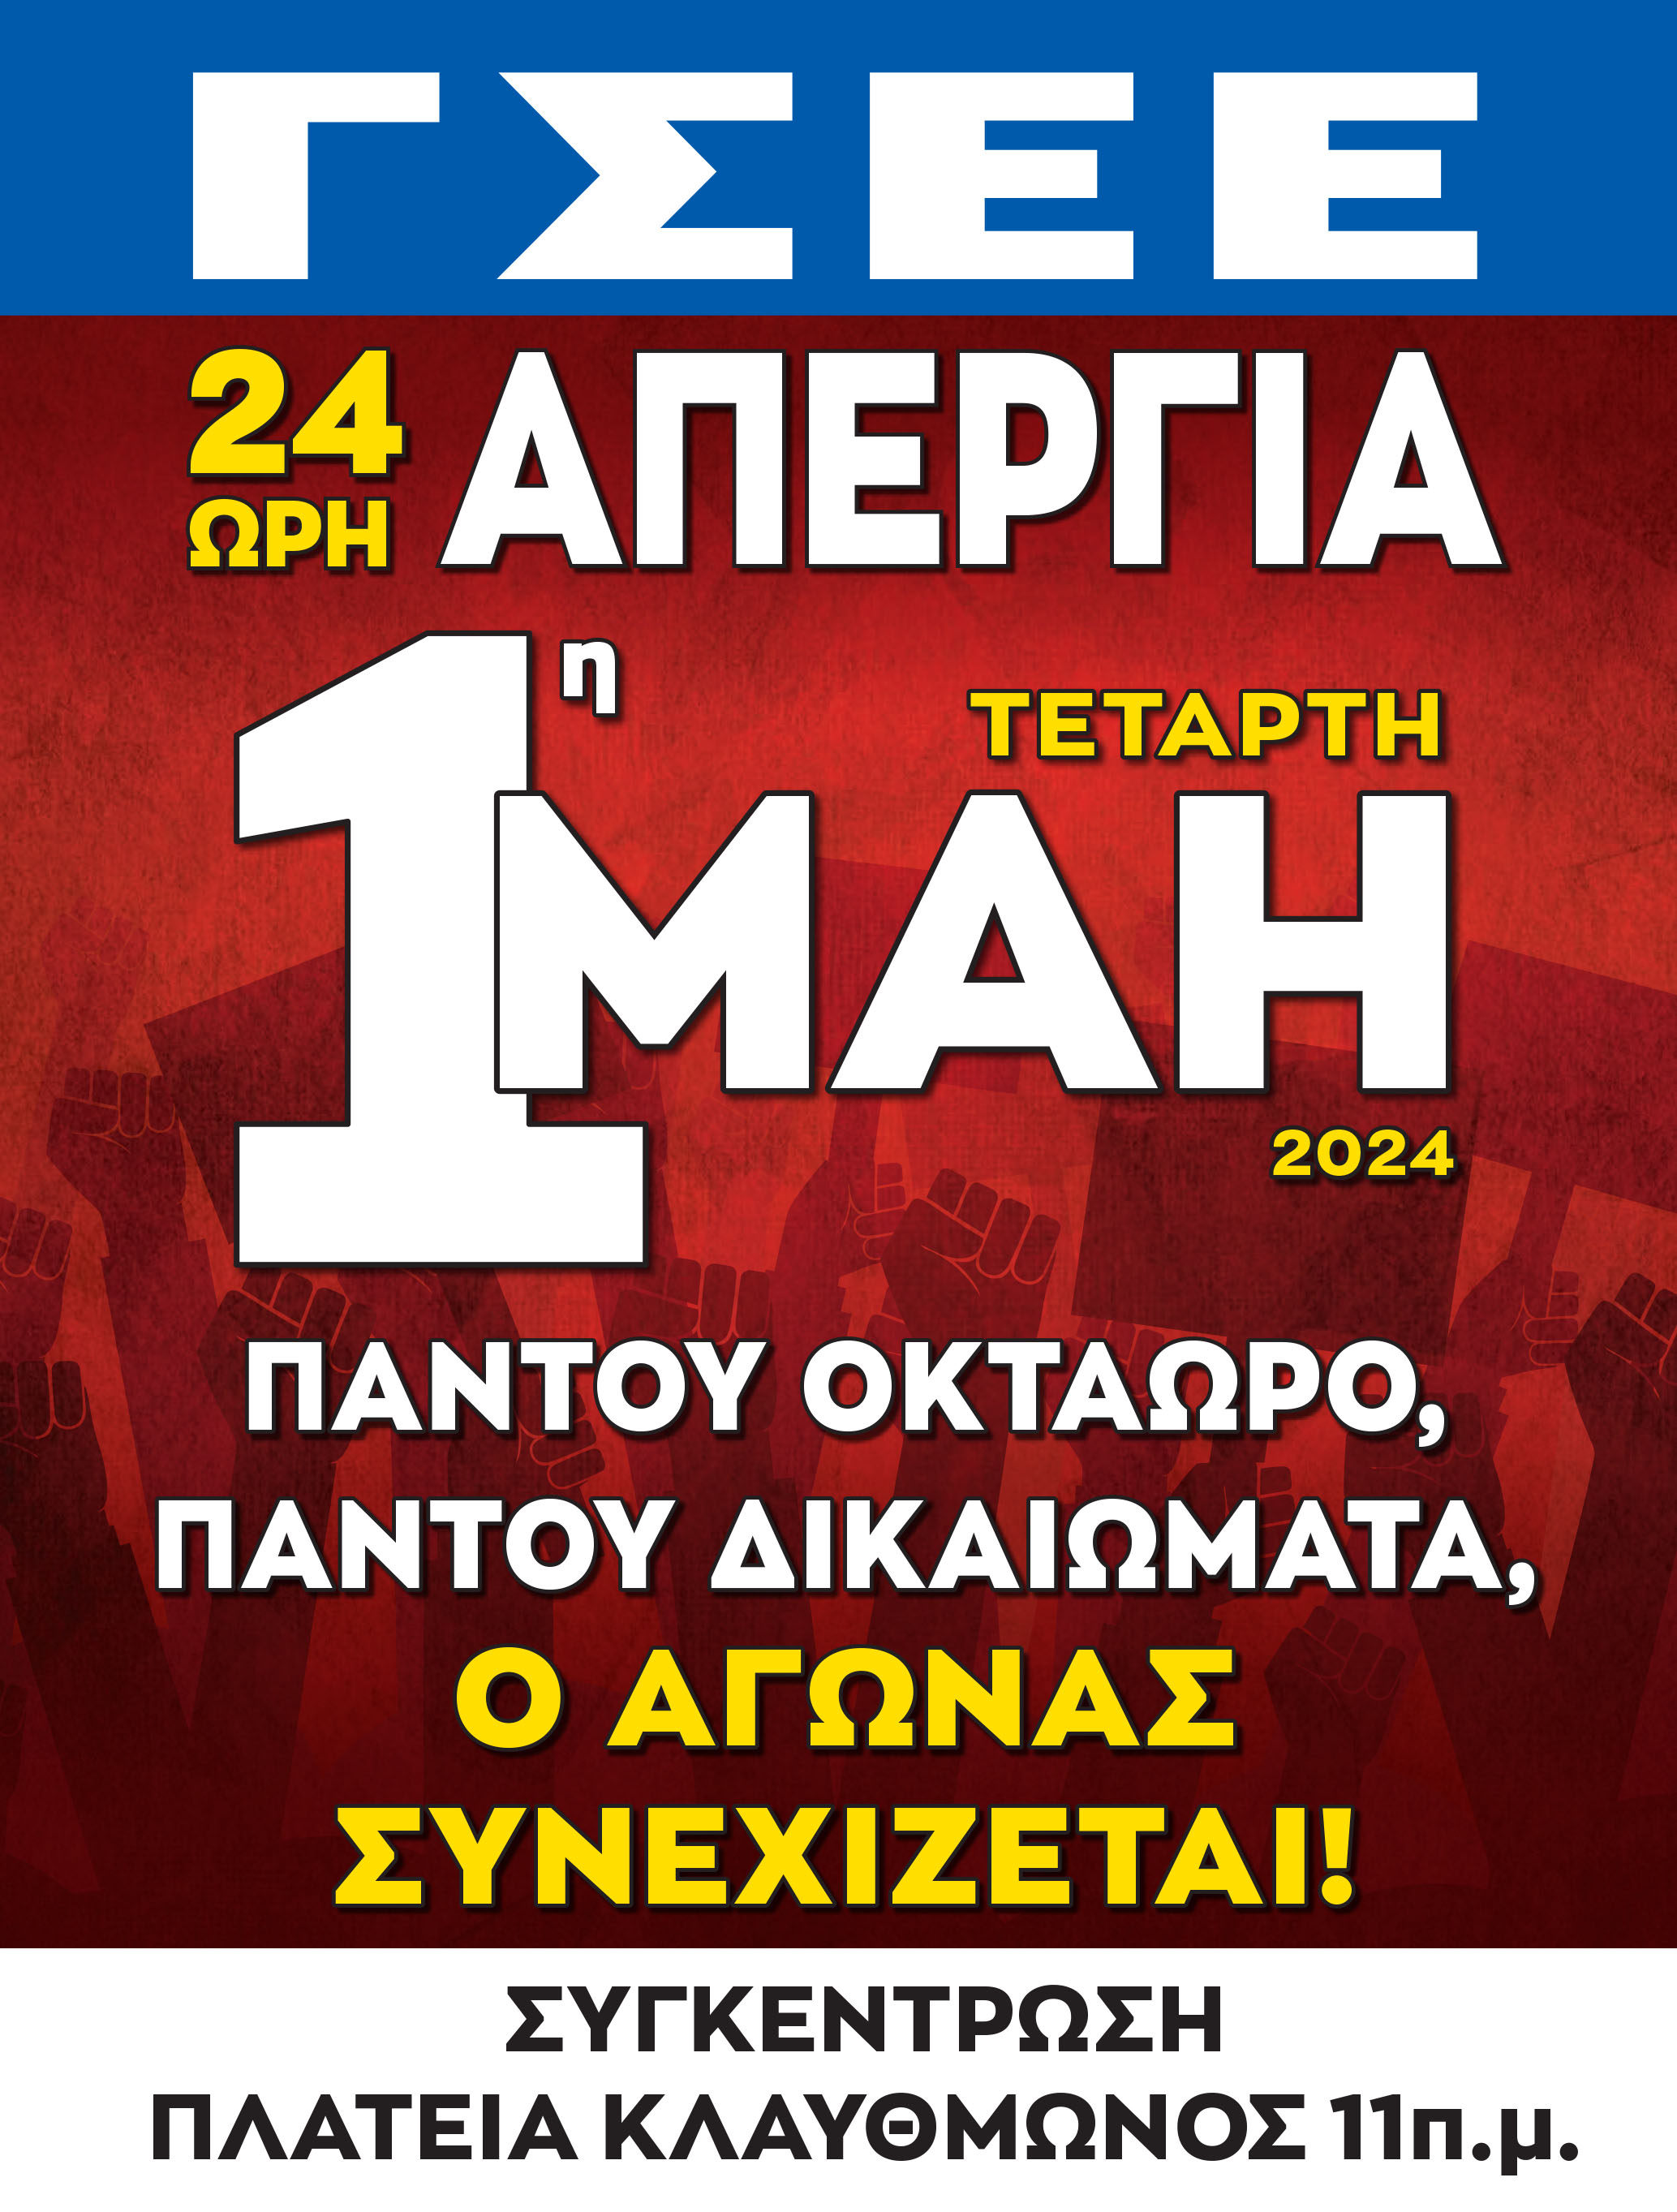 Η ΓΣΕΕ, δίνει στη δημοσιότητα την αφίσα και την διακήρυξη της 24ΩΡΗΣ Απεργίας που με απόφασή της προκήρυξε για την 1η Μάη